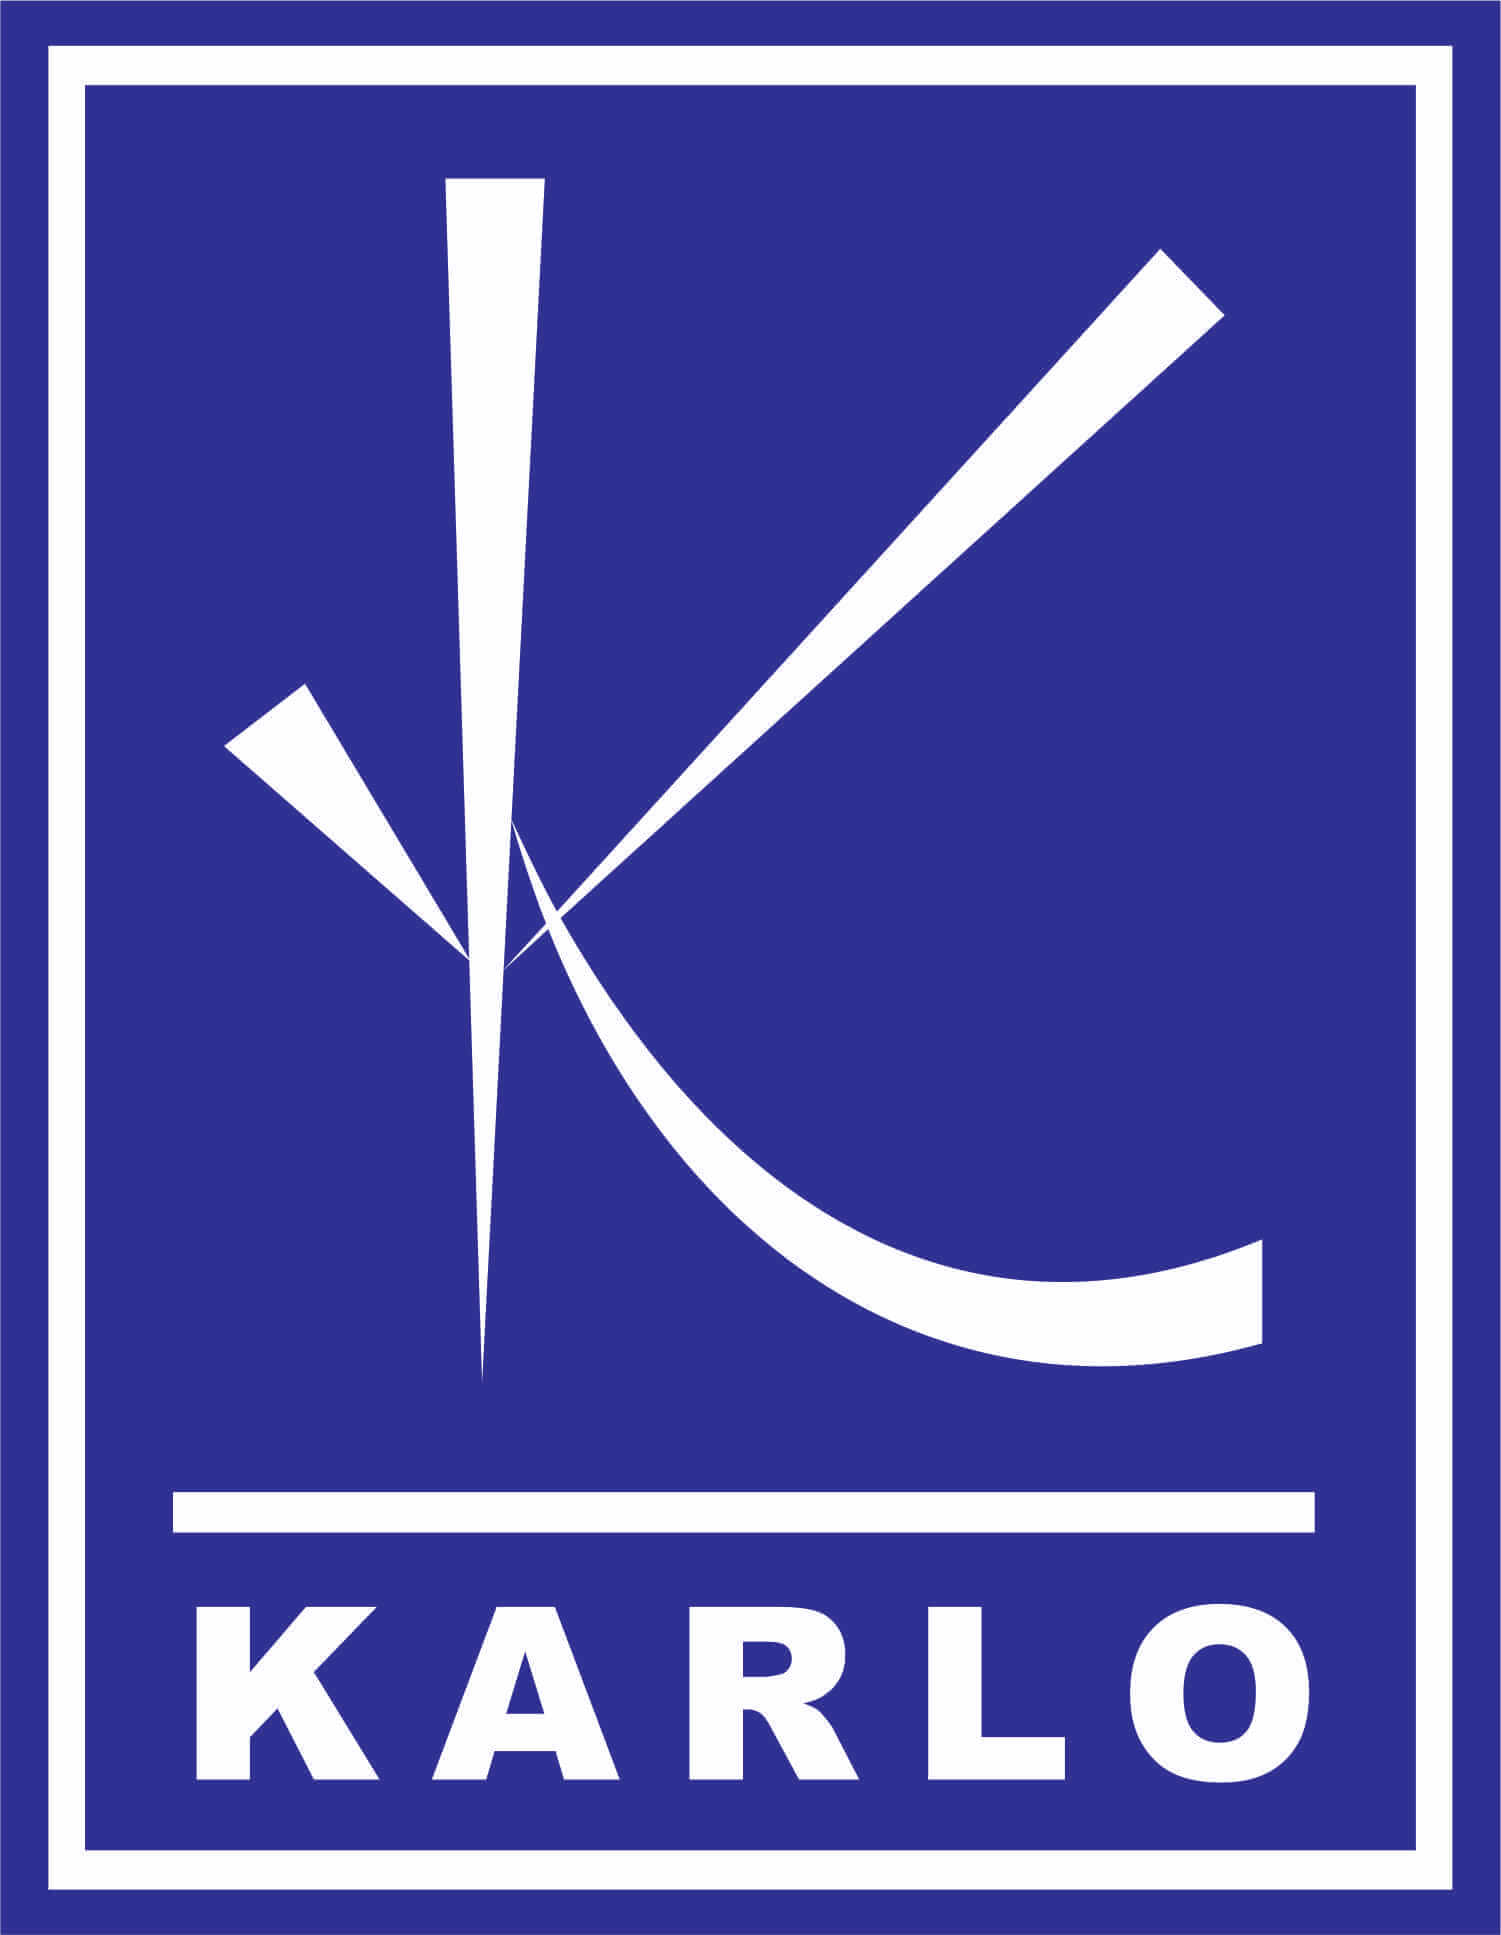 Karlo Automobiles Logo